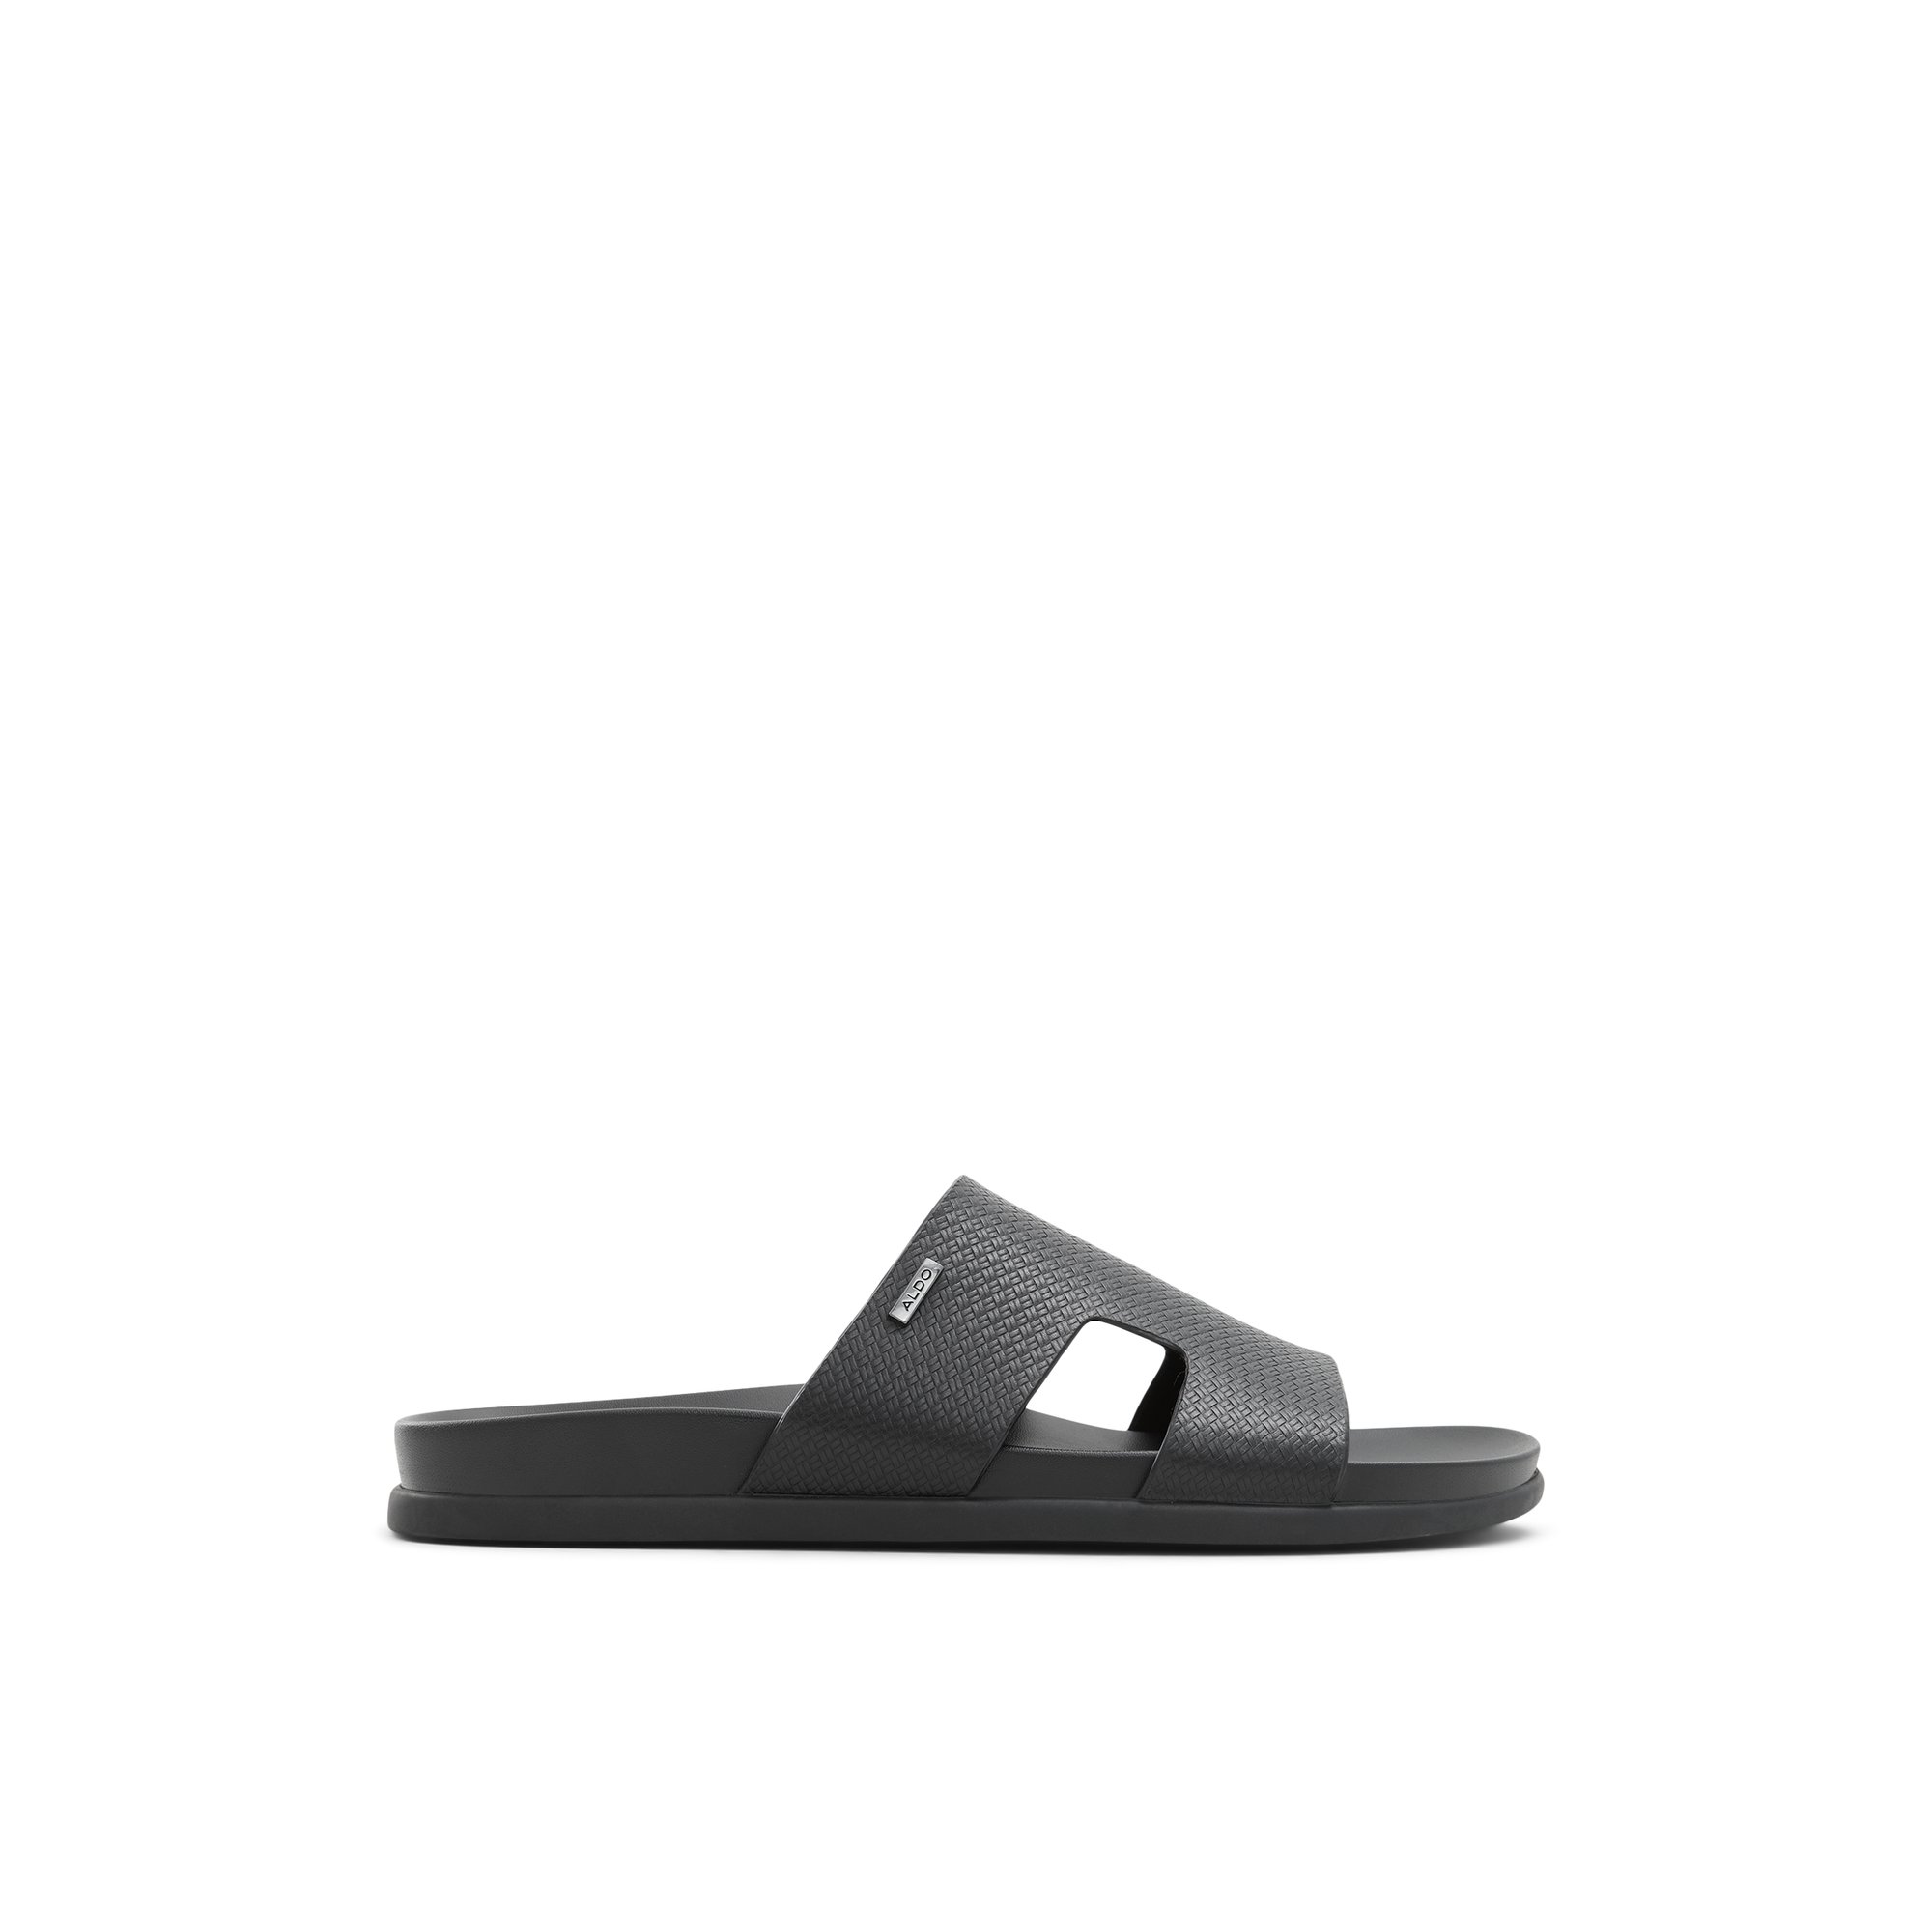 ALDO Mondi - Men's Sandals Slides - Black